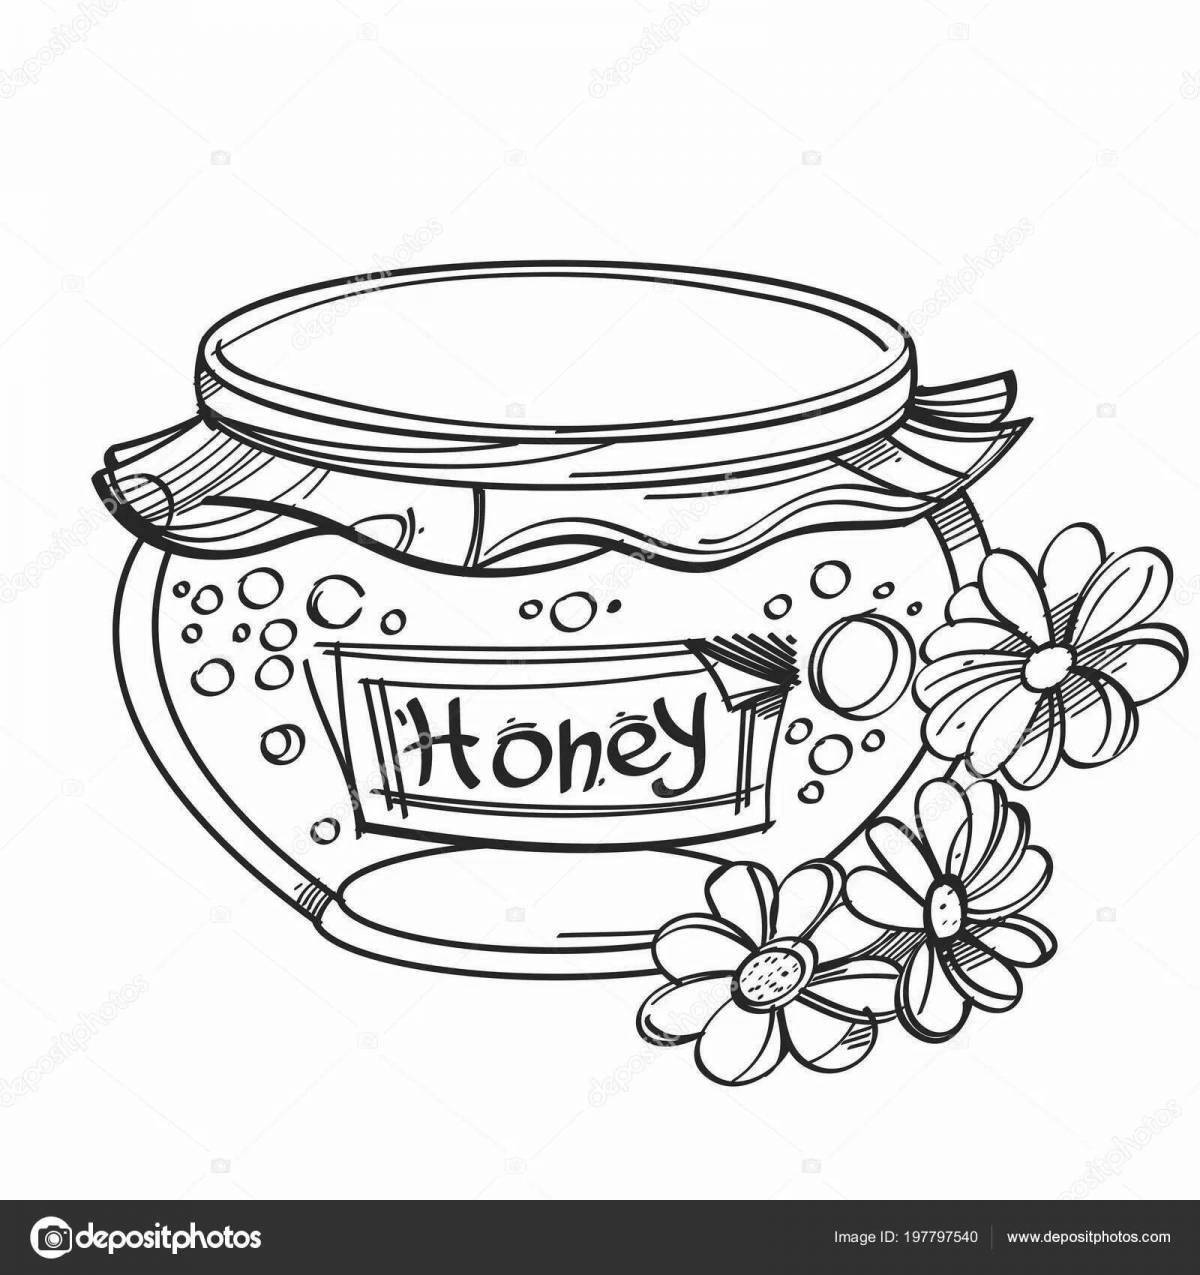 Exquisite honey coloring book for preschoolers